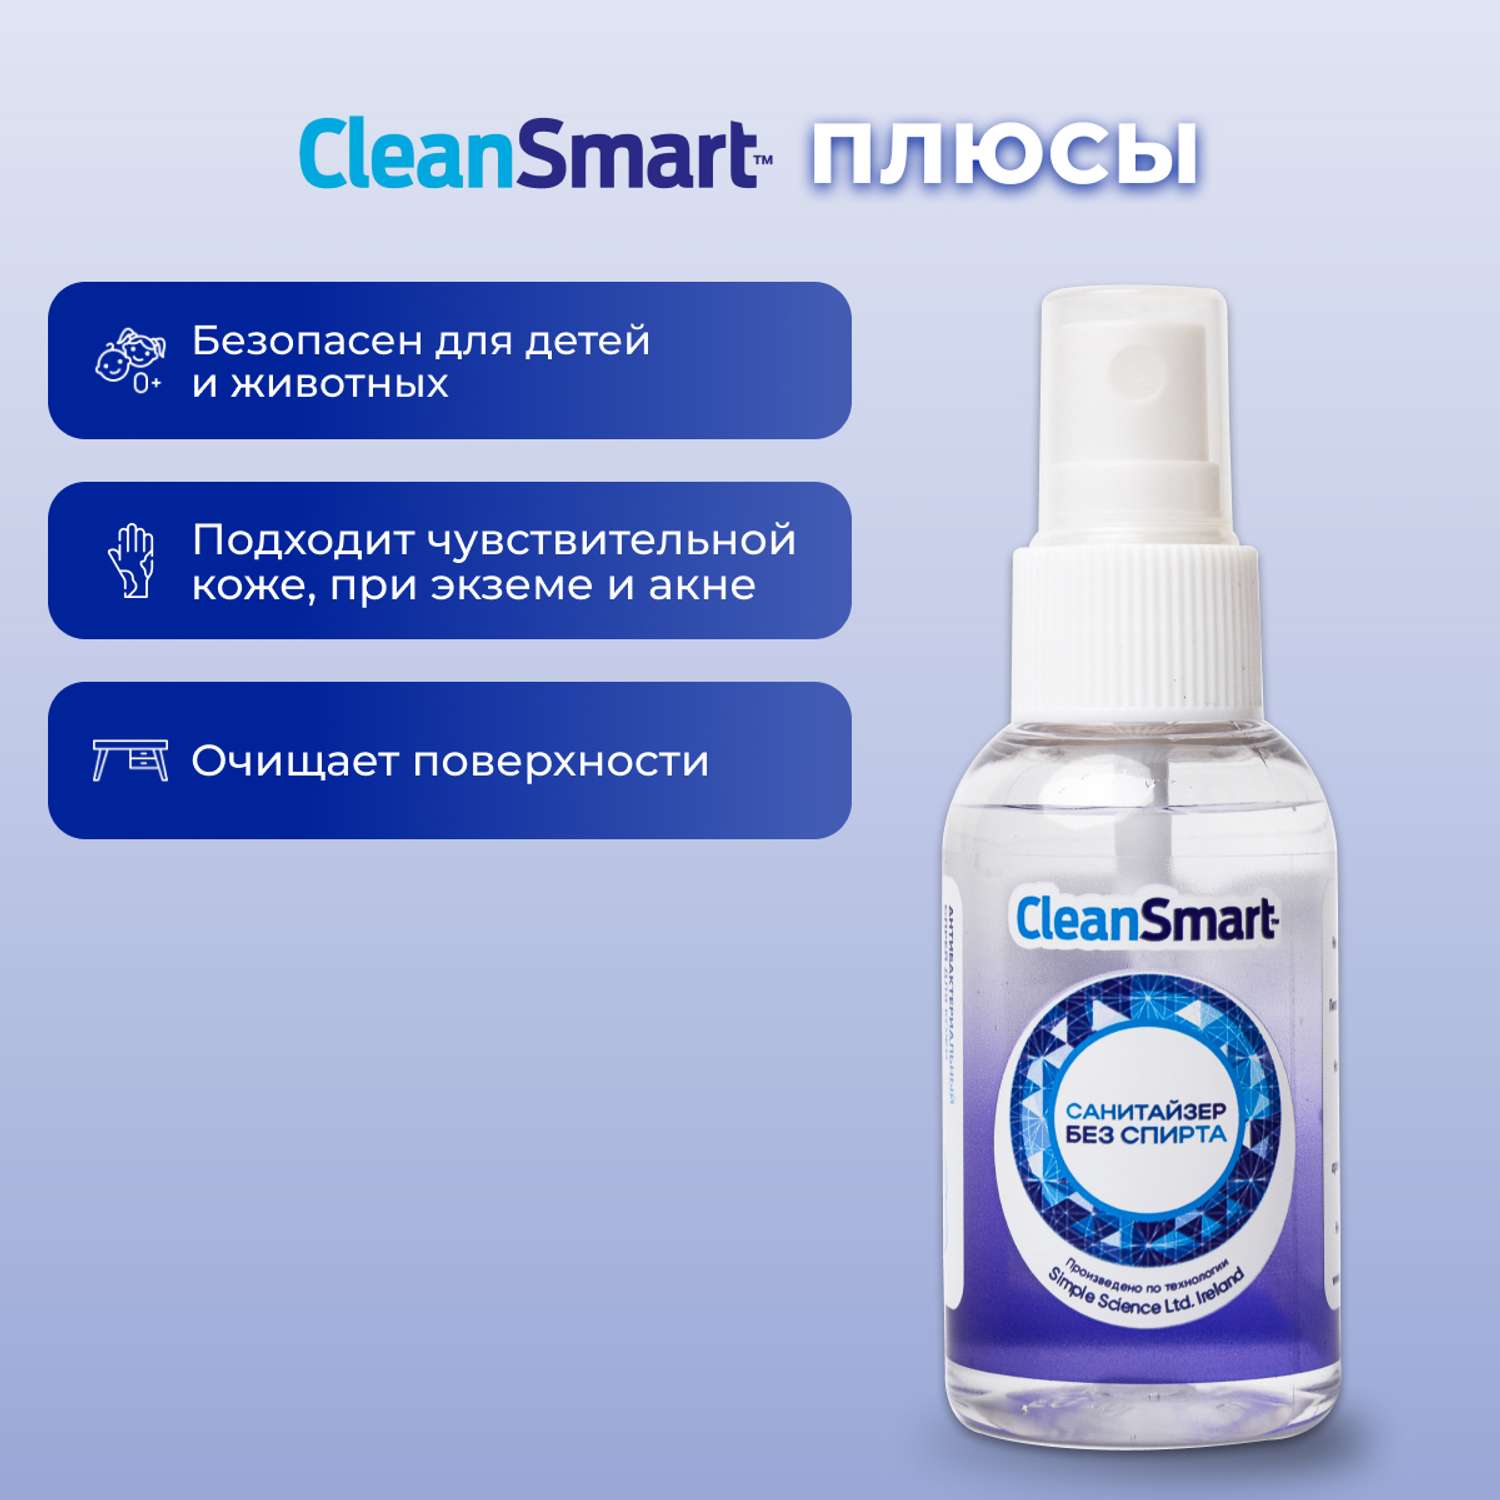 Антибактериальный спрей CleanSmart Антисептик для рук и поверхностей санитайзер для всей семьи 50 мл - фото 5